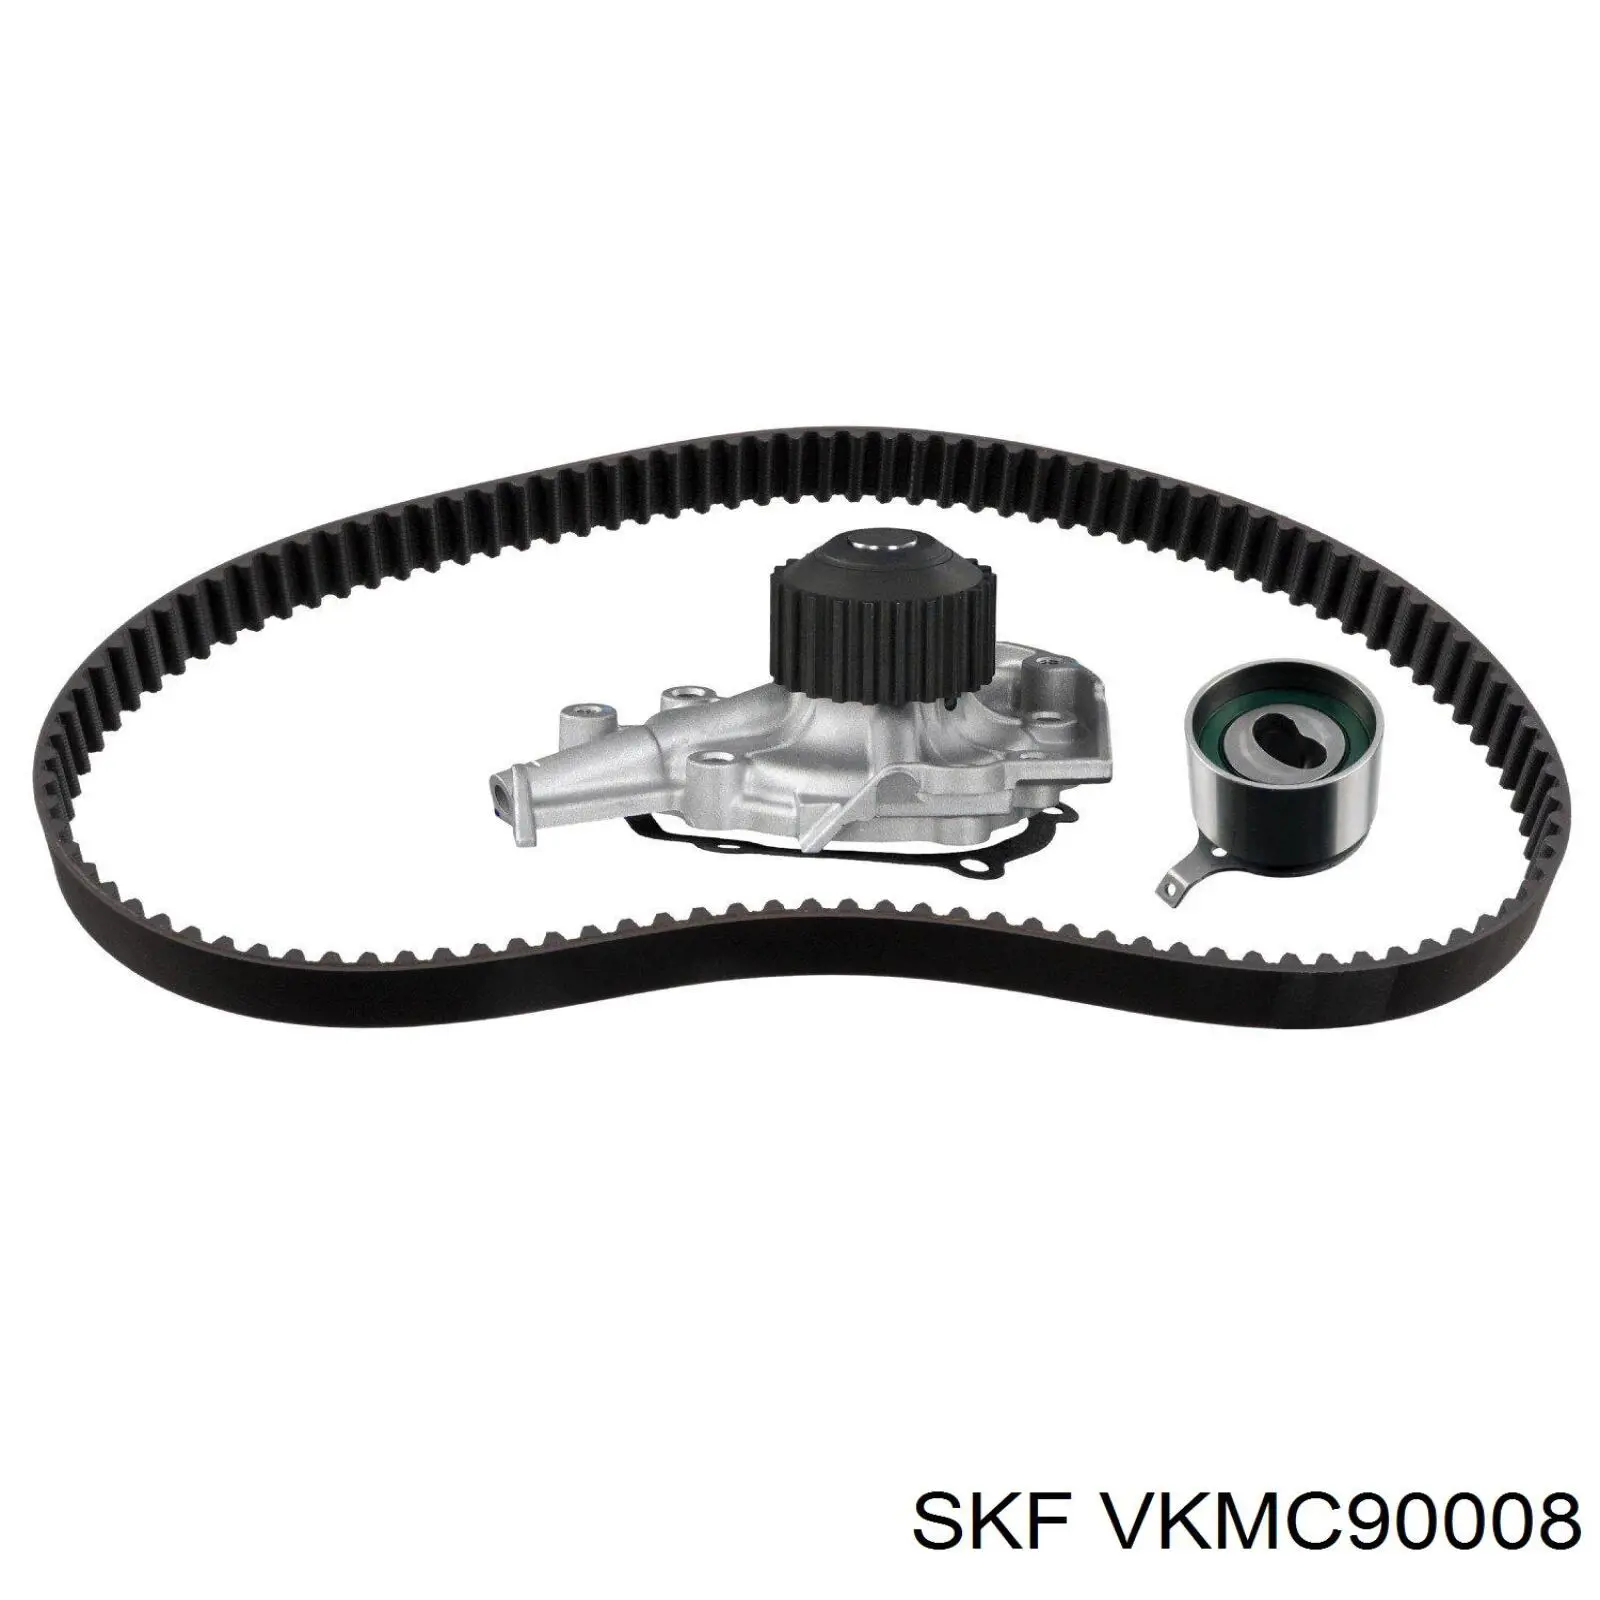 VKMC 90008 SKF kit de correa de distribución